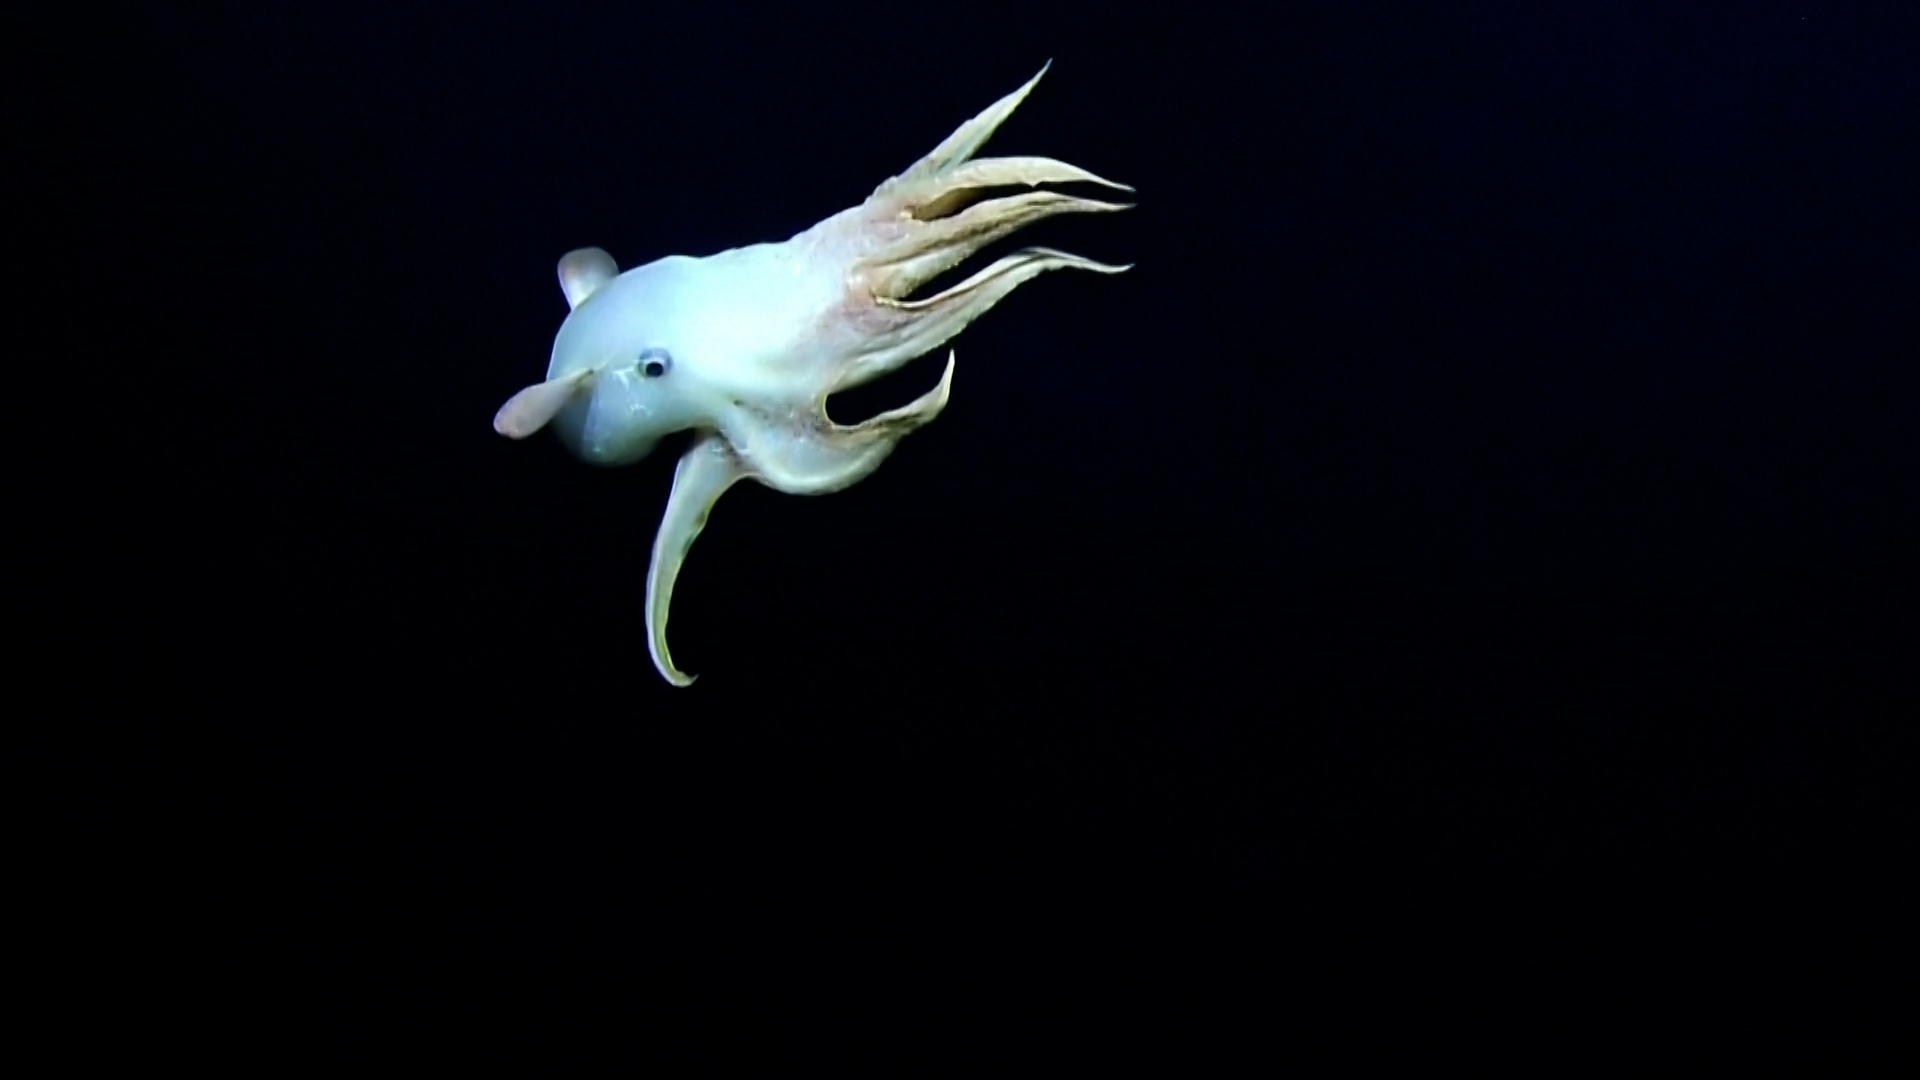 «Ντάμπο το χταποδάκι»: Σπάνιο είδος χταποδιού καταγράφεται από υποβρύχια κάμερα (video)